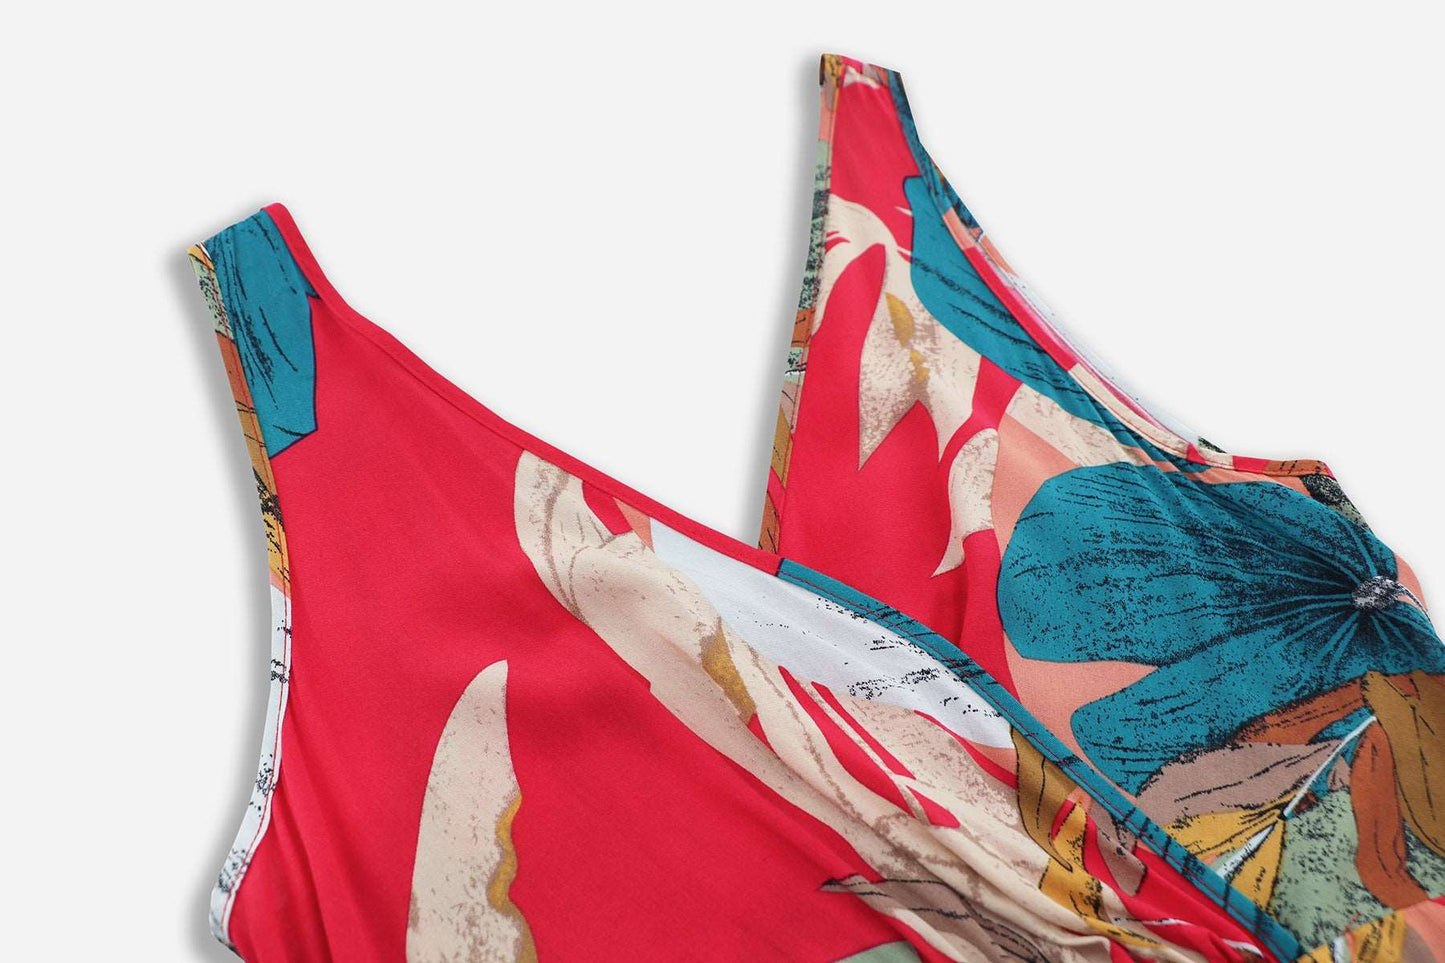 Women's Floral Print Tied Waist V-neck Slit Design Sleeveless Long Dress